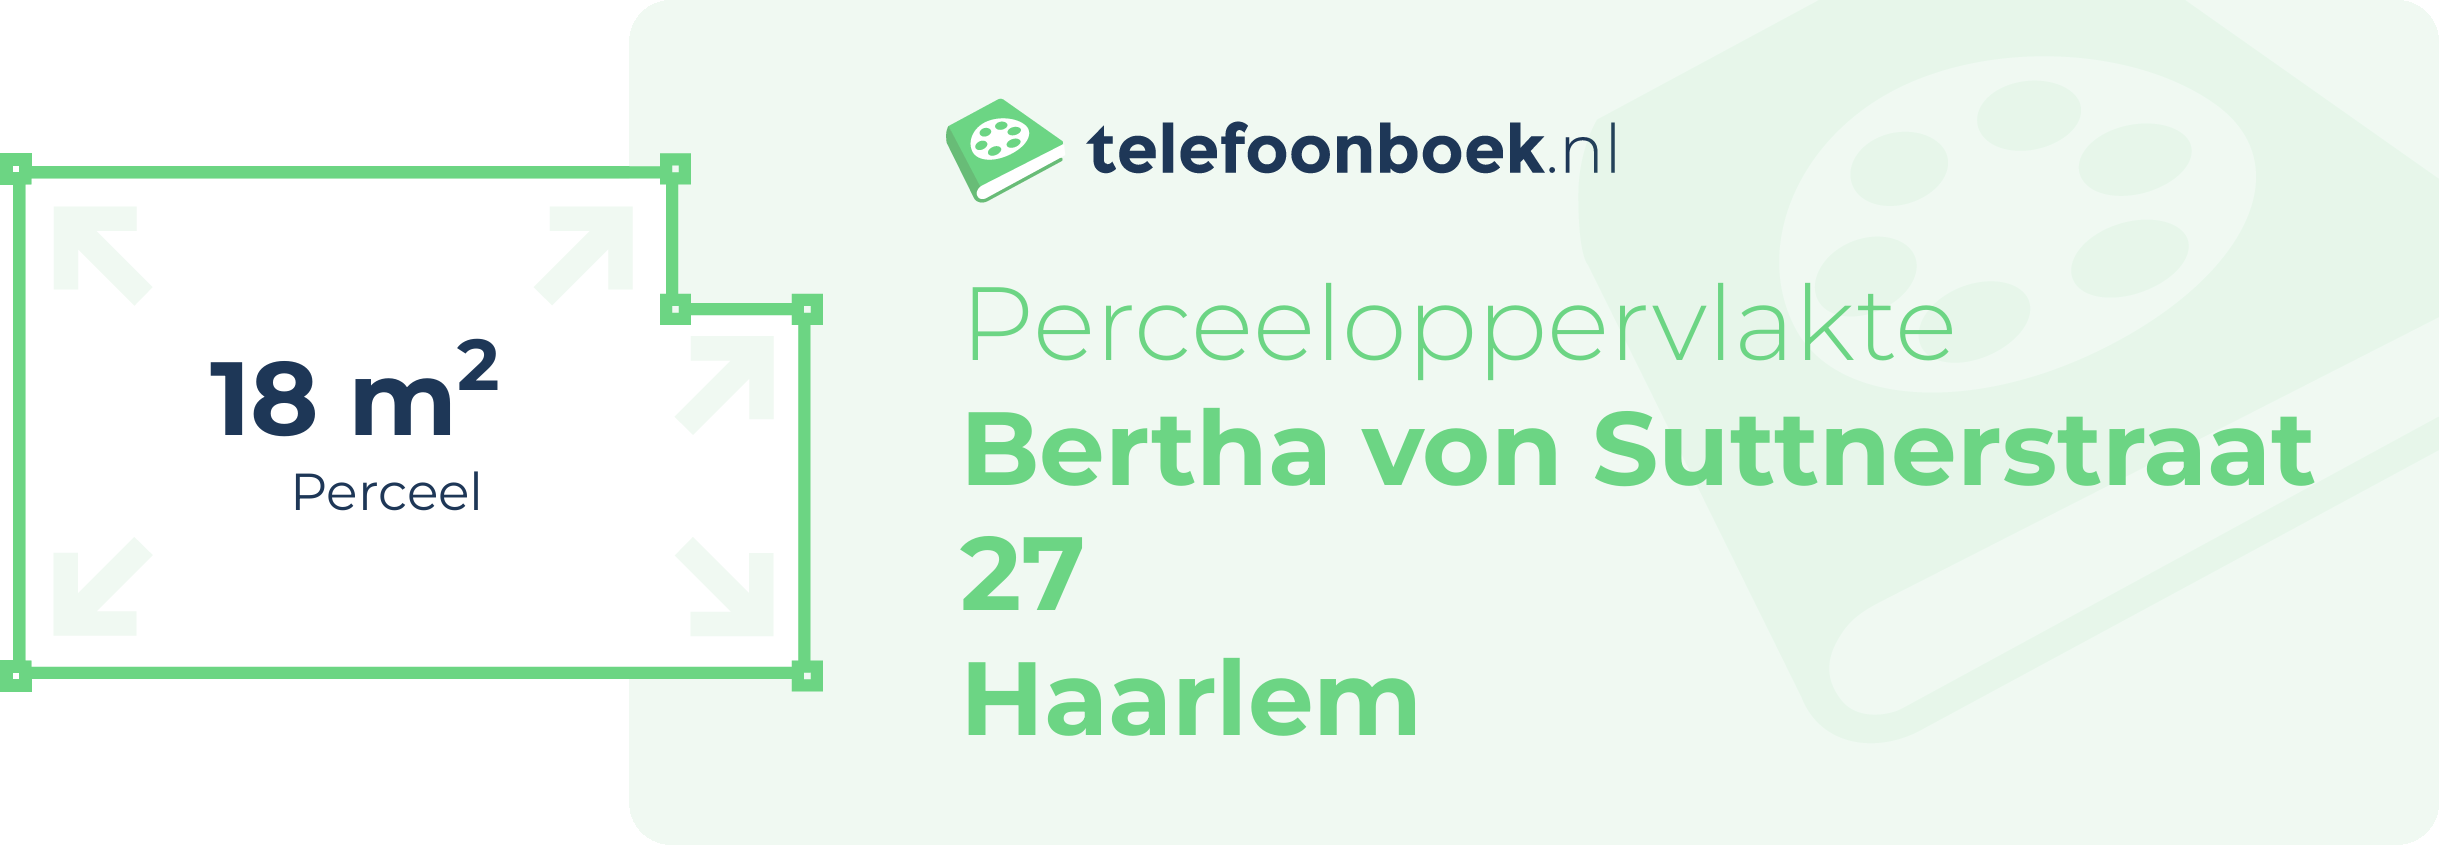 Perceeloppervlakte Bertha Von Suttnerstraat 27 Haarlem